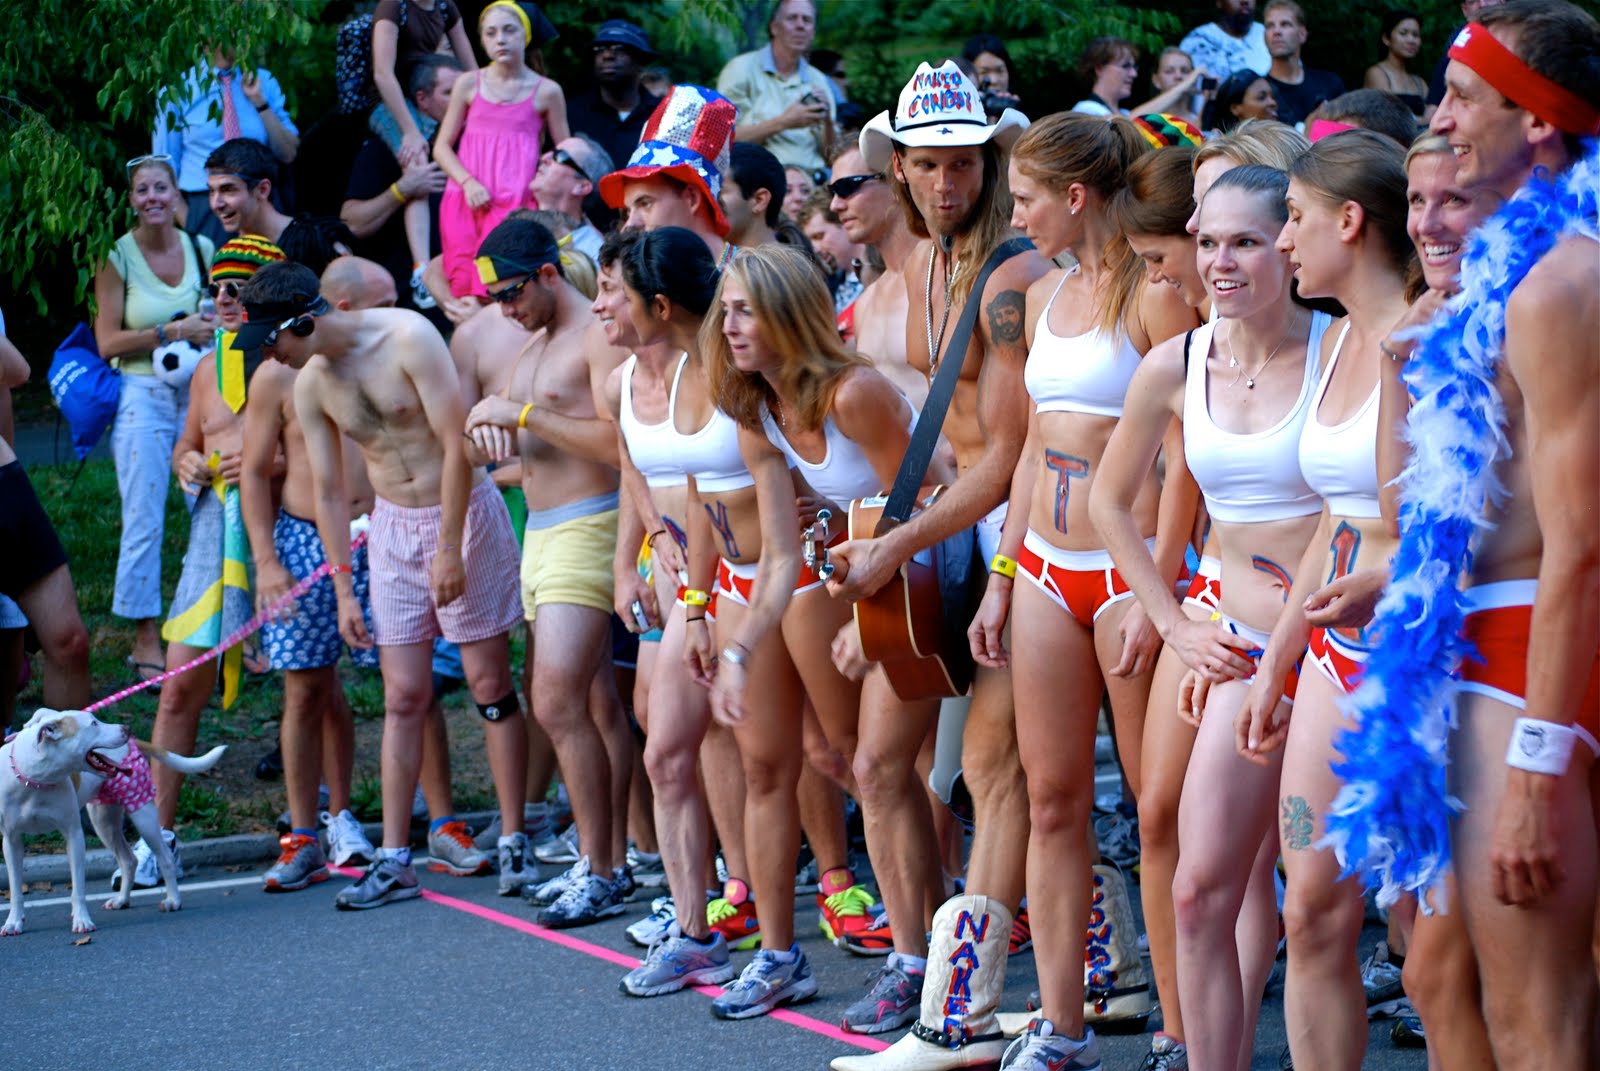 2010 Jamaica Underwear Run, Another Typical Summer Evening in Central Park 